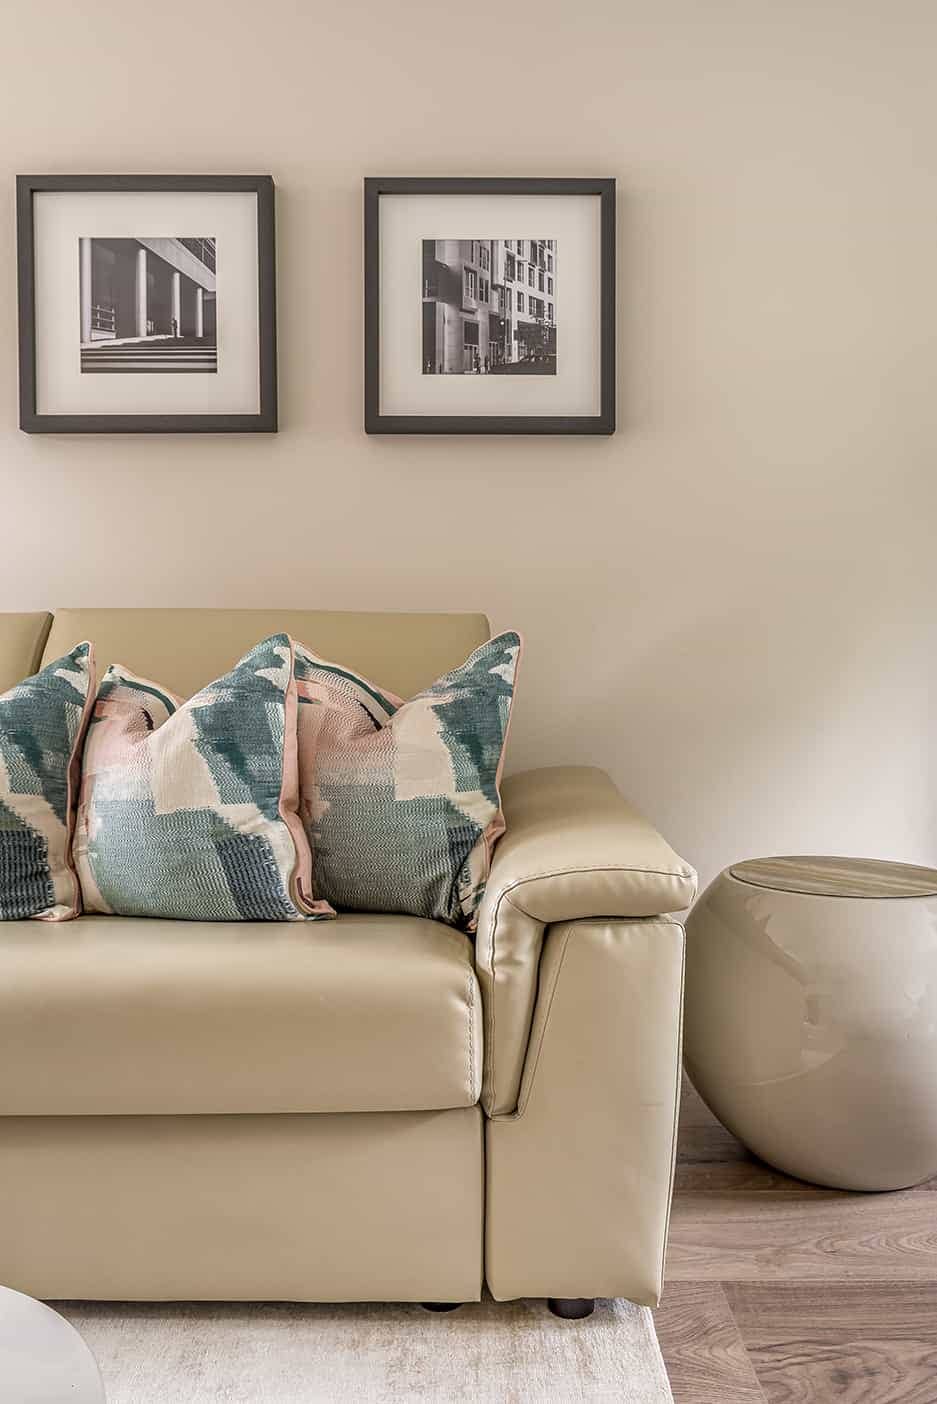 Loughton Interior Design for a Lounge Sofa